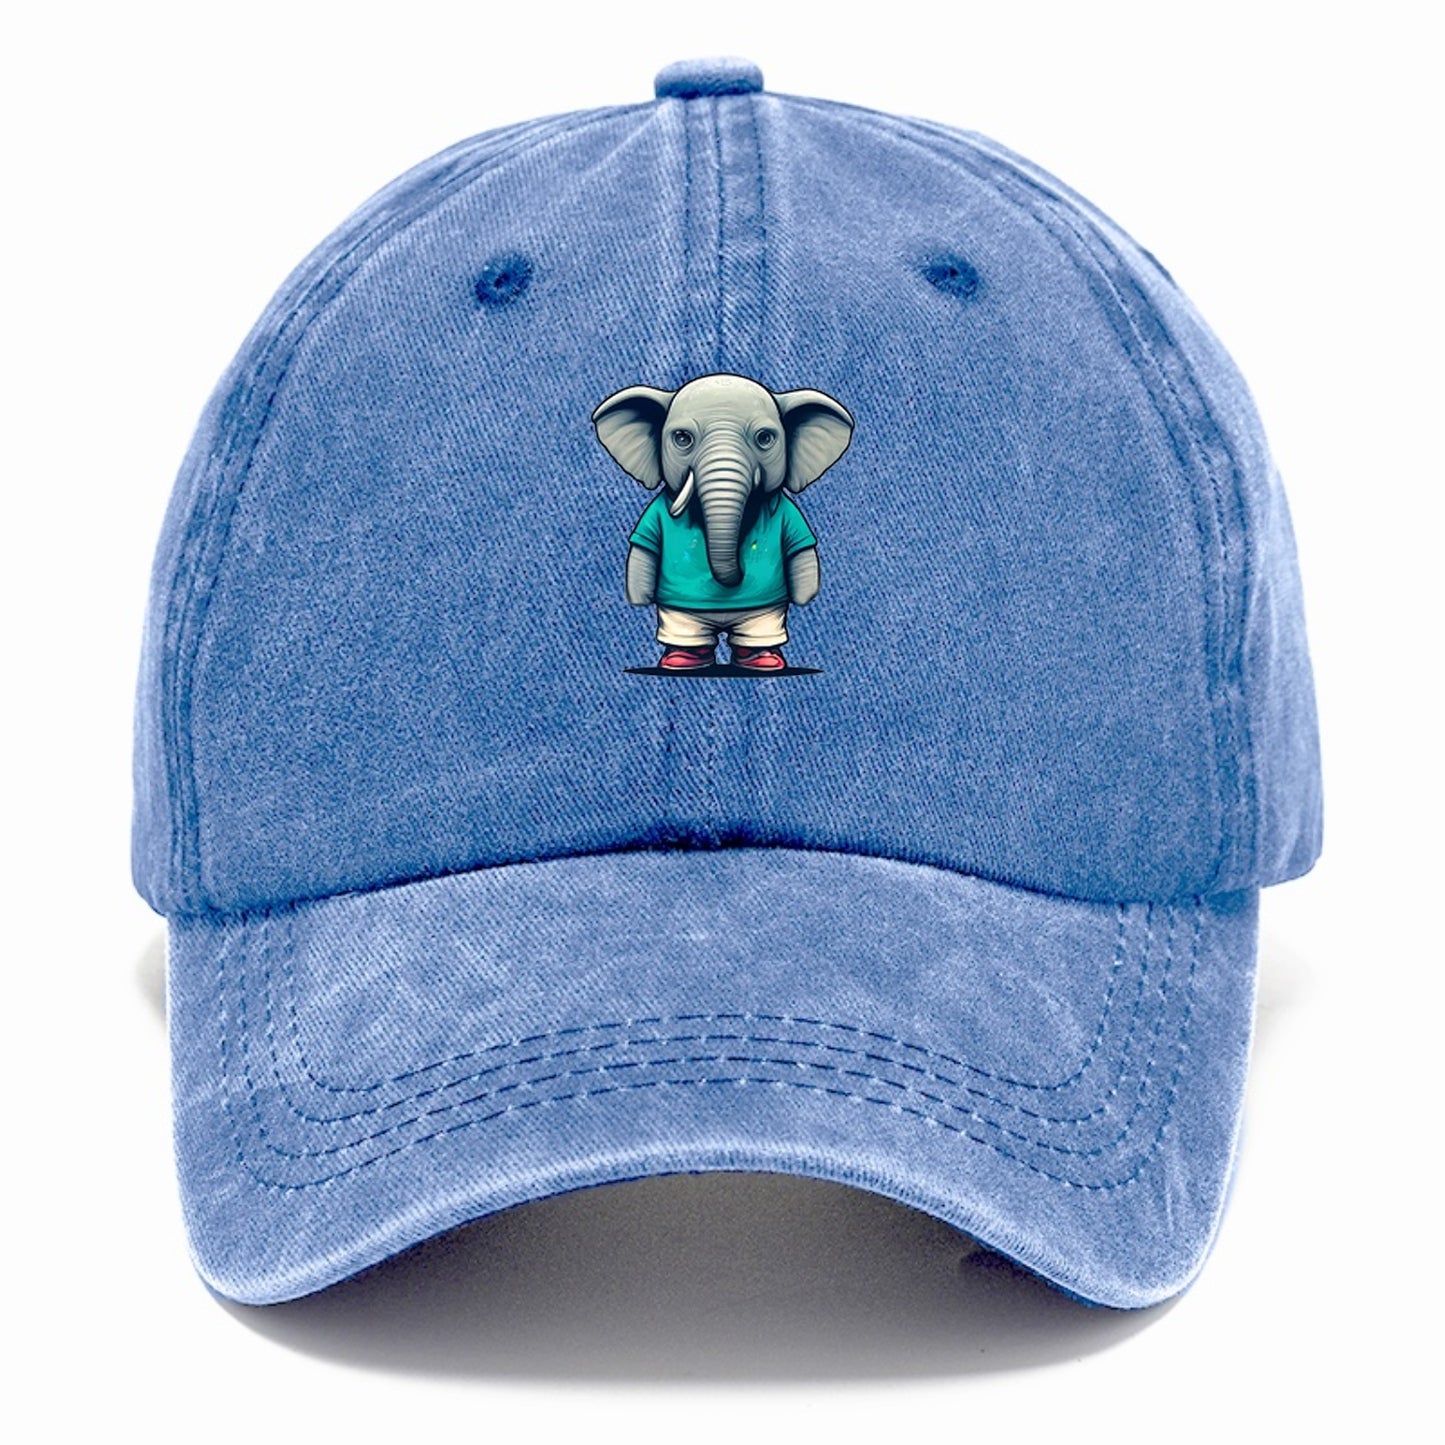 bored elephant 6 Hat